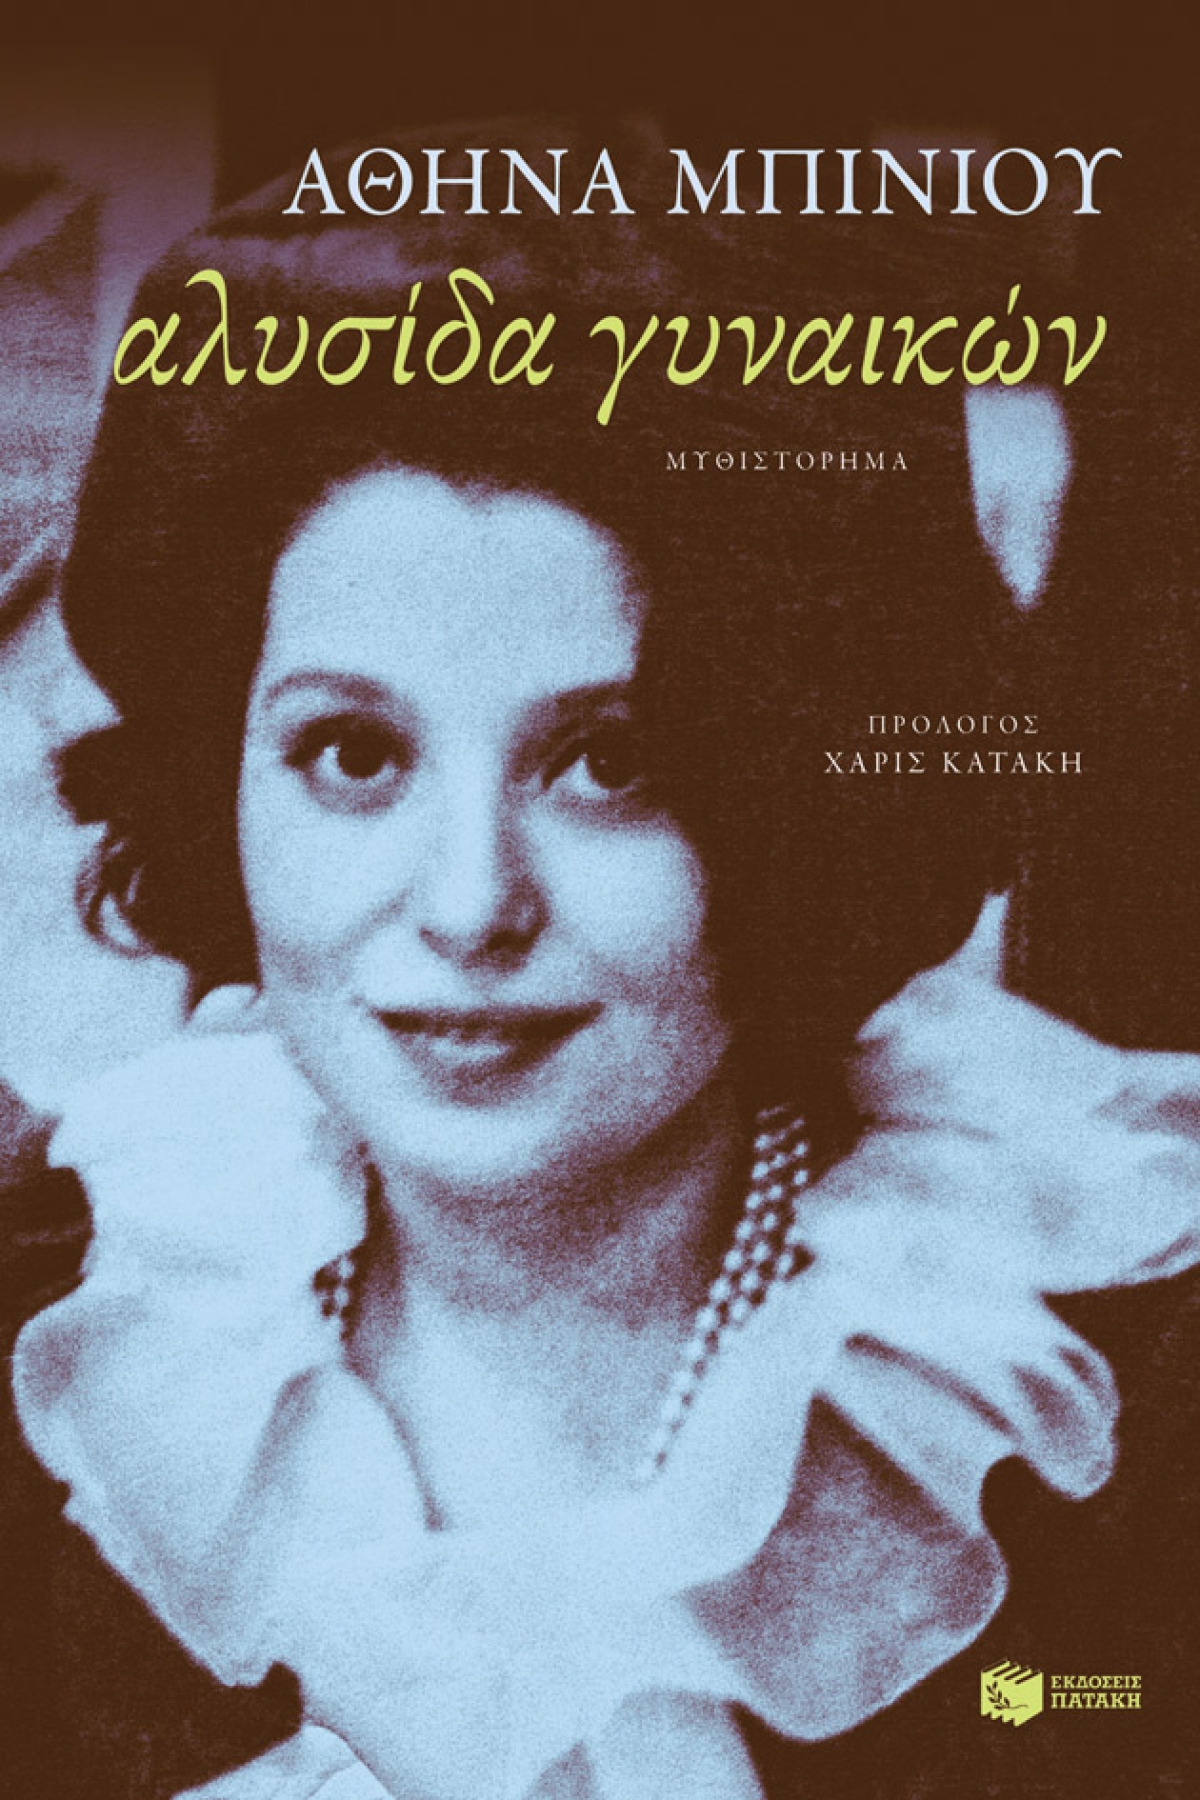 Κυκλοφορεί από τις εκδόσεις Πατάκη το απολαυστικό μυθιστόρημα της Αθηνάς Μπίνιου &quot;Αλυσίδα γυναικών&quot;